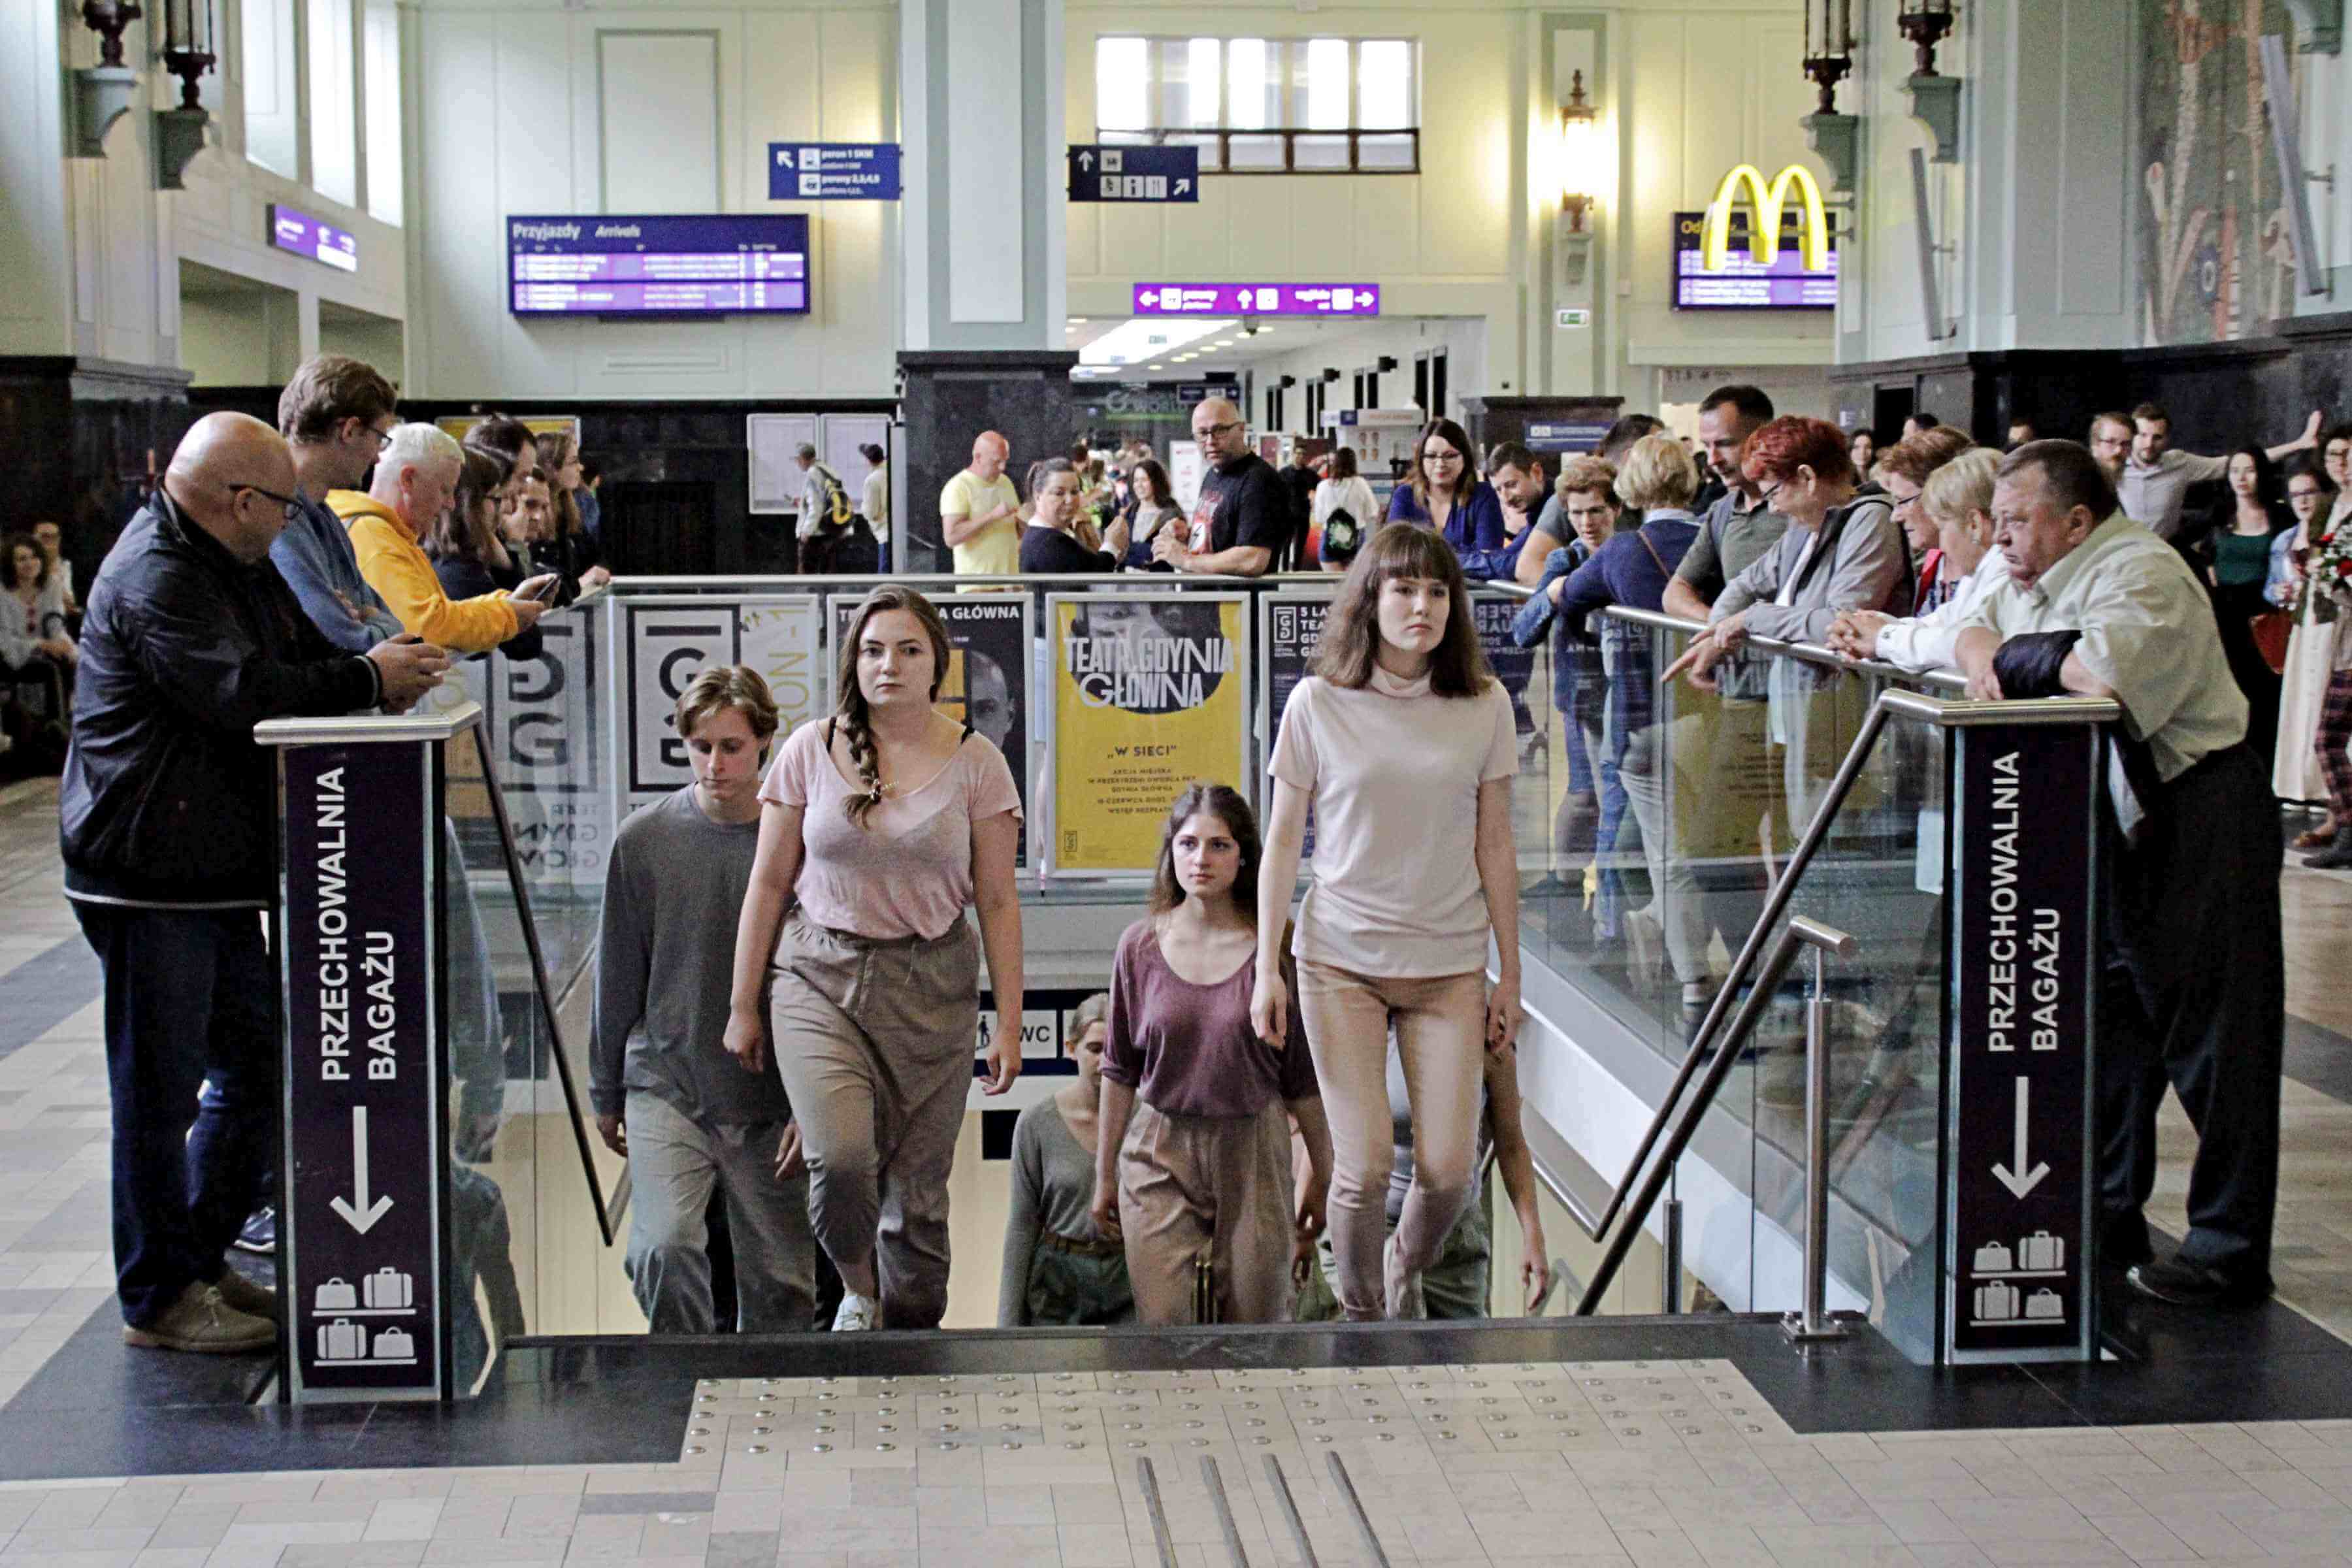 w przestrzeni dworca, po schodach prowadzących do teatru wychodzą z niego ustawieni parami młodzi ludzie, na przedzie idą dwie kobiety, wszyscy ubrani są w jasne kolory, odcienie szarego i różu, dookoła widać przyglądających się przechodniów